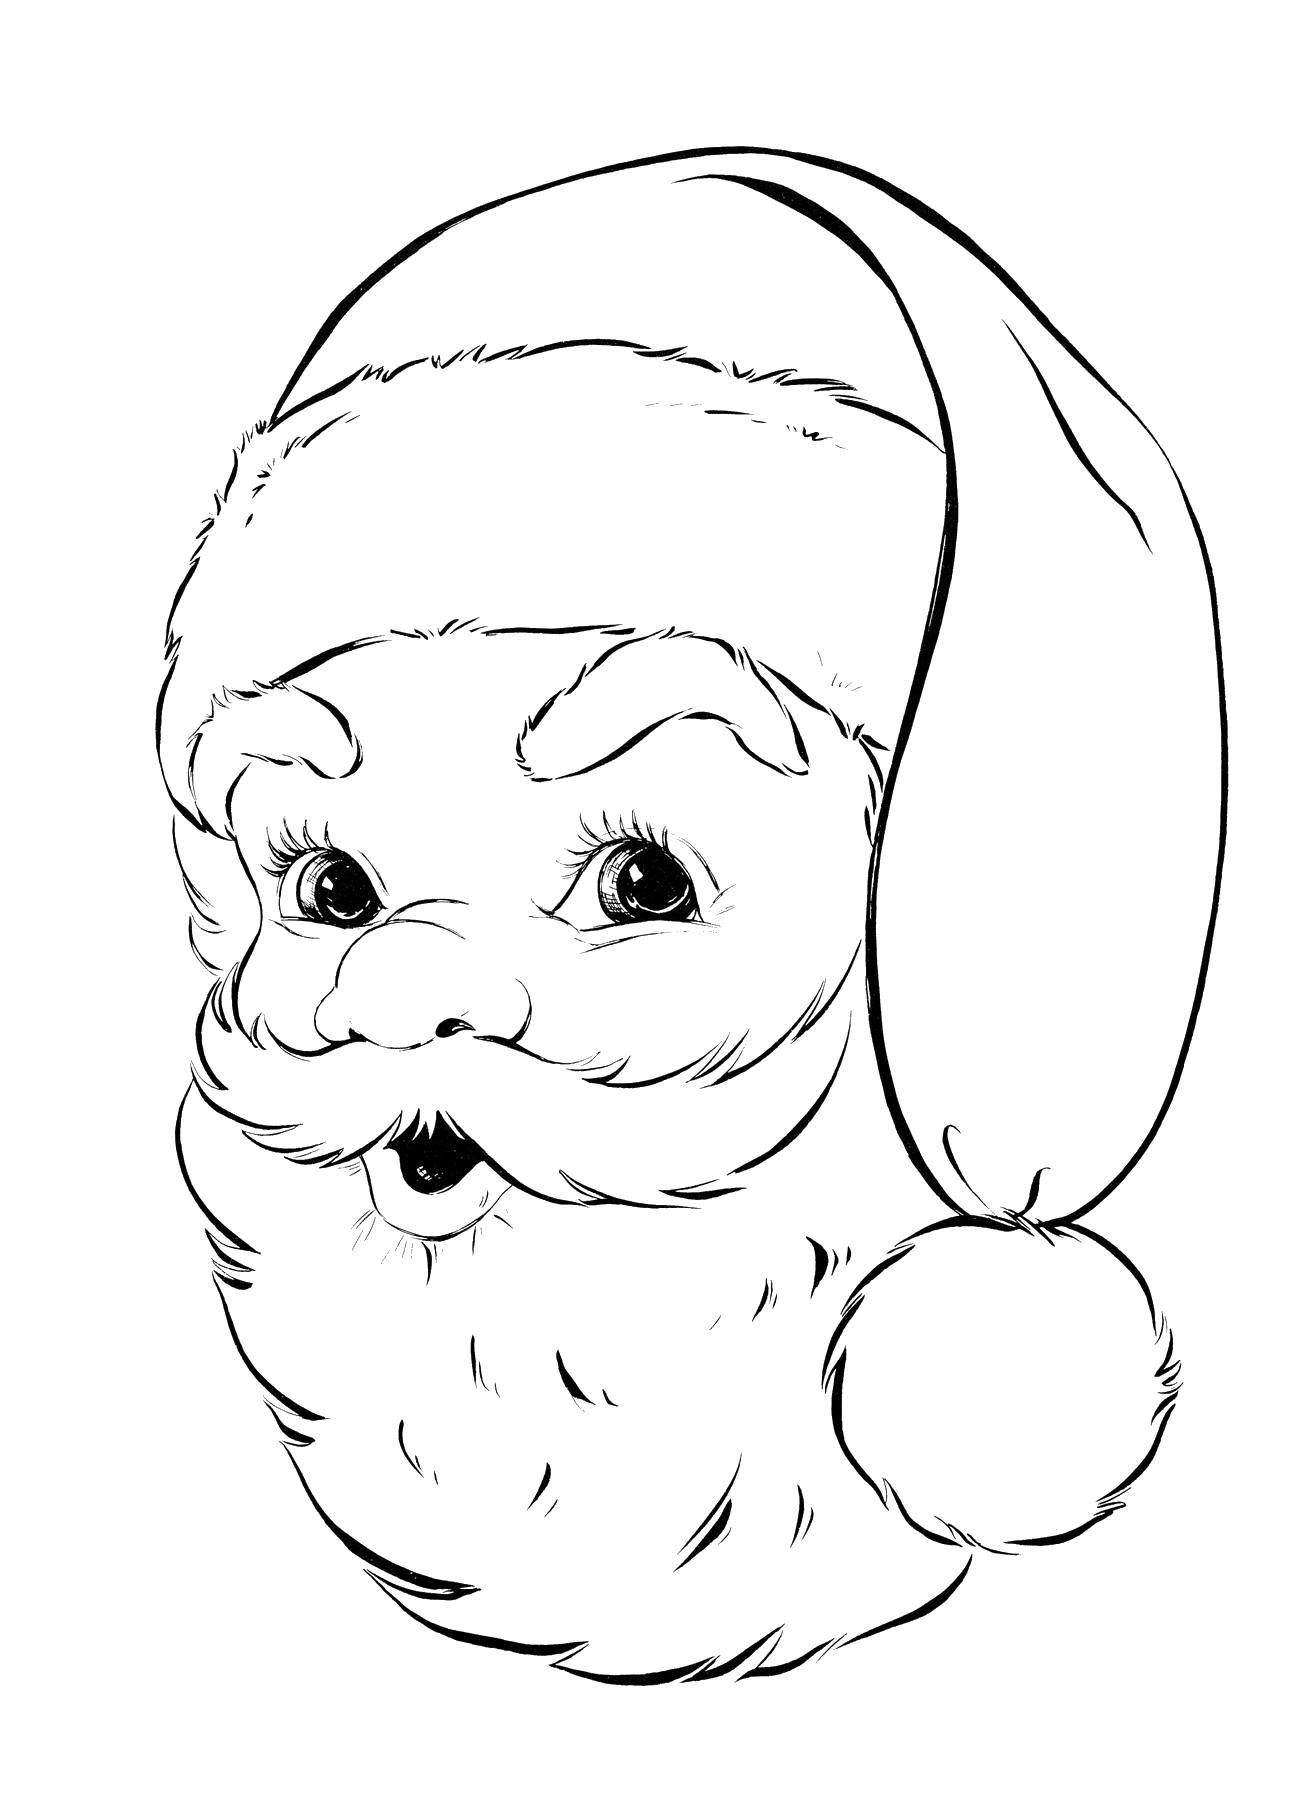 Coloring Santa Claus!. Category Christmas. Tags:  Christmas, Santa Claus.